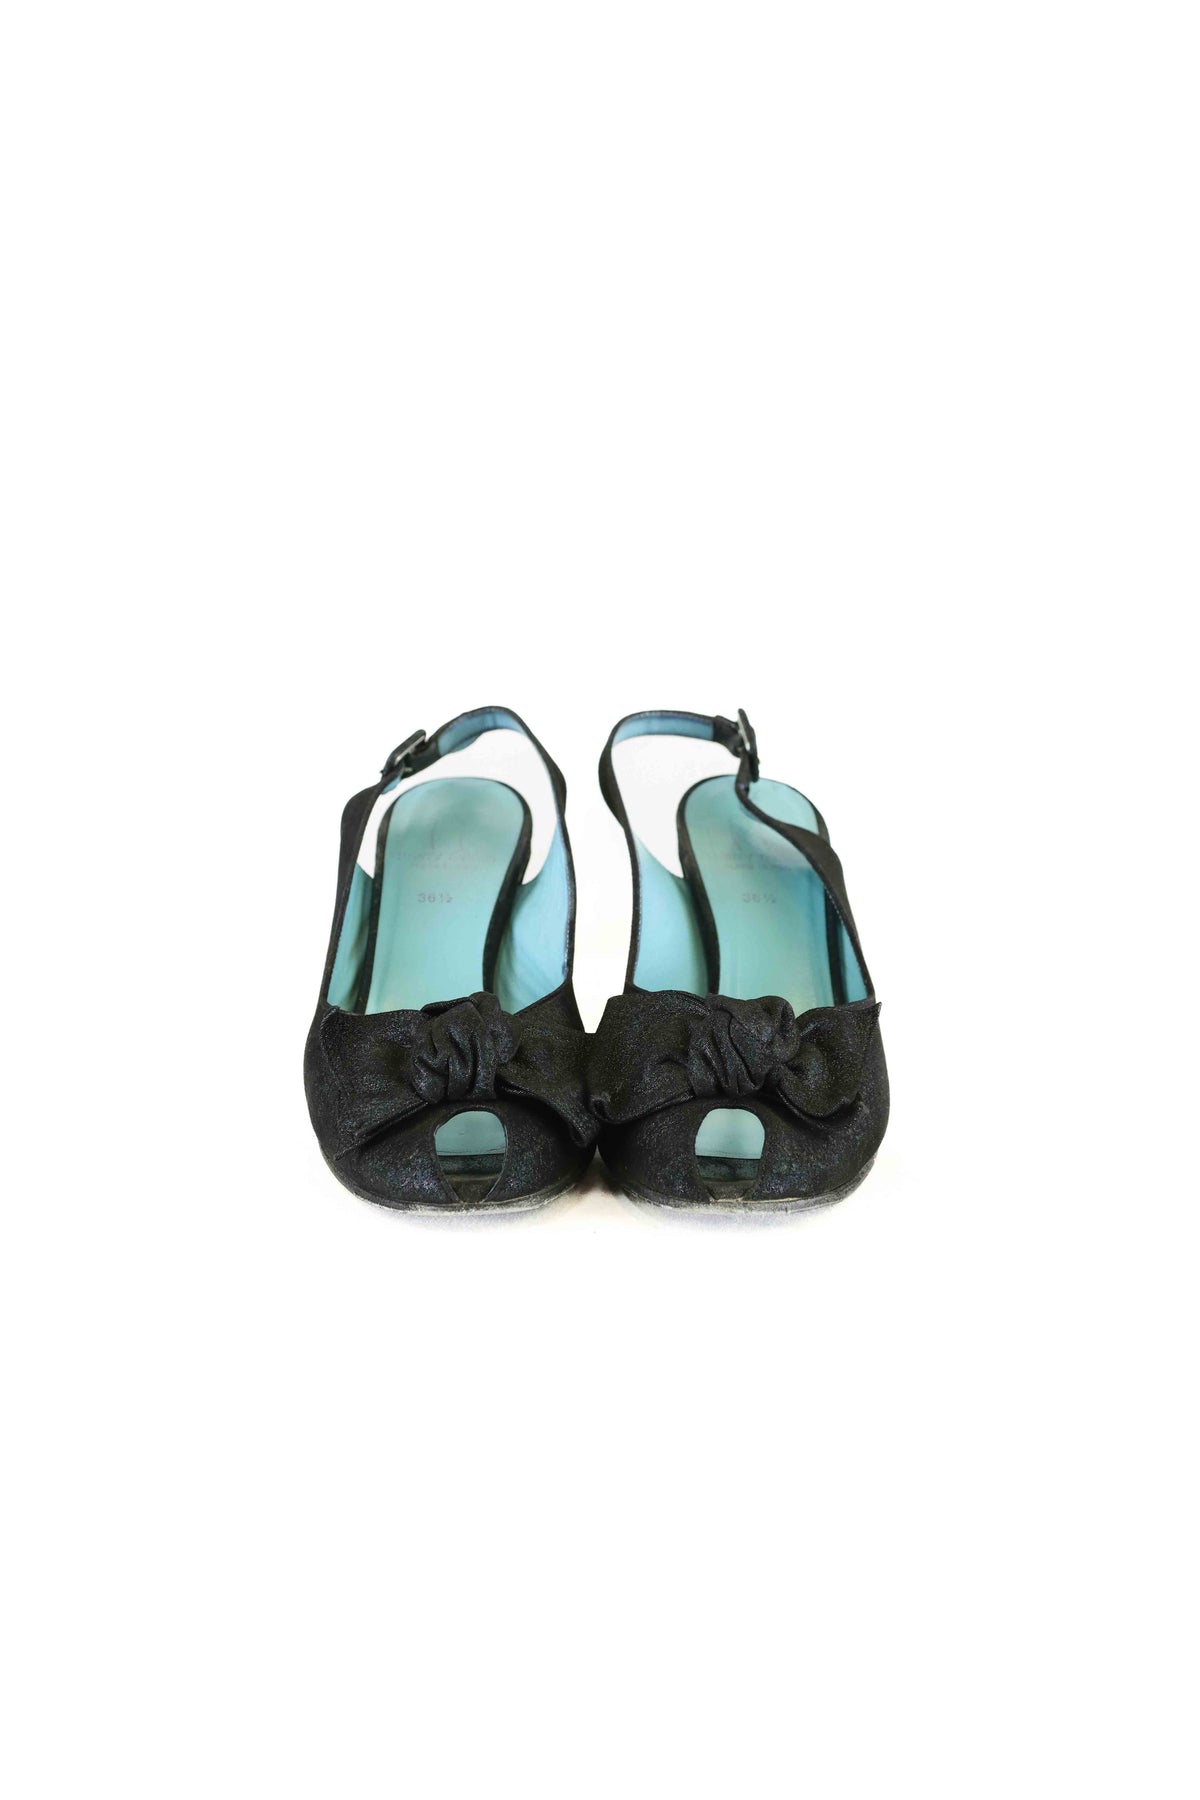 Thierry Rabotin Black Shimmery Peep Toe Heels AU/US 5.5 (EU 36.5)